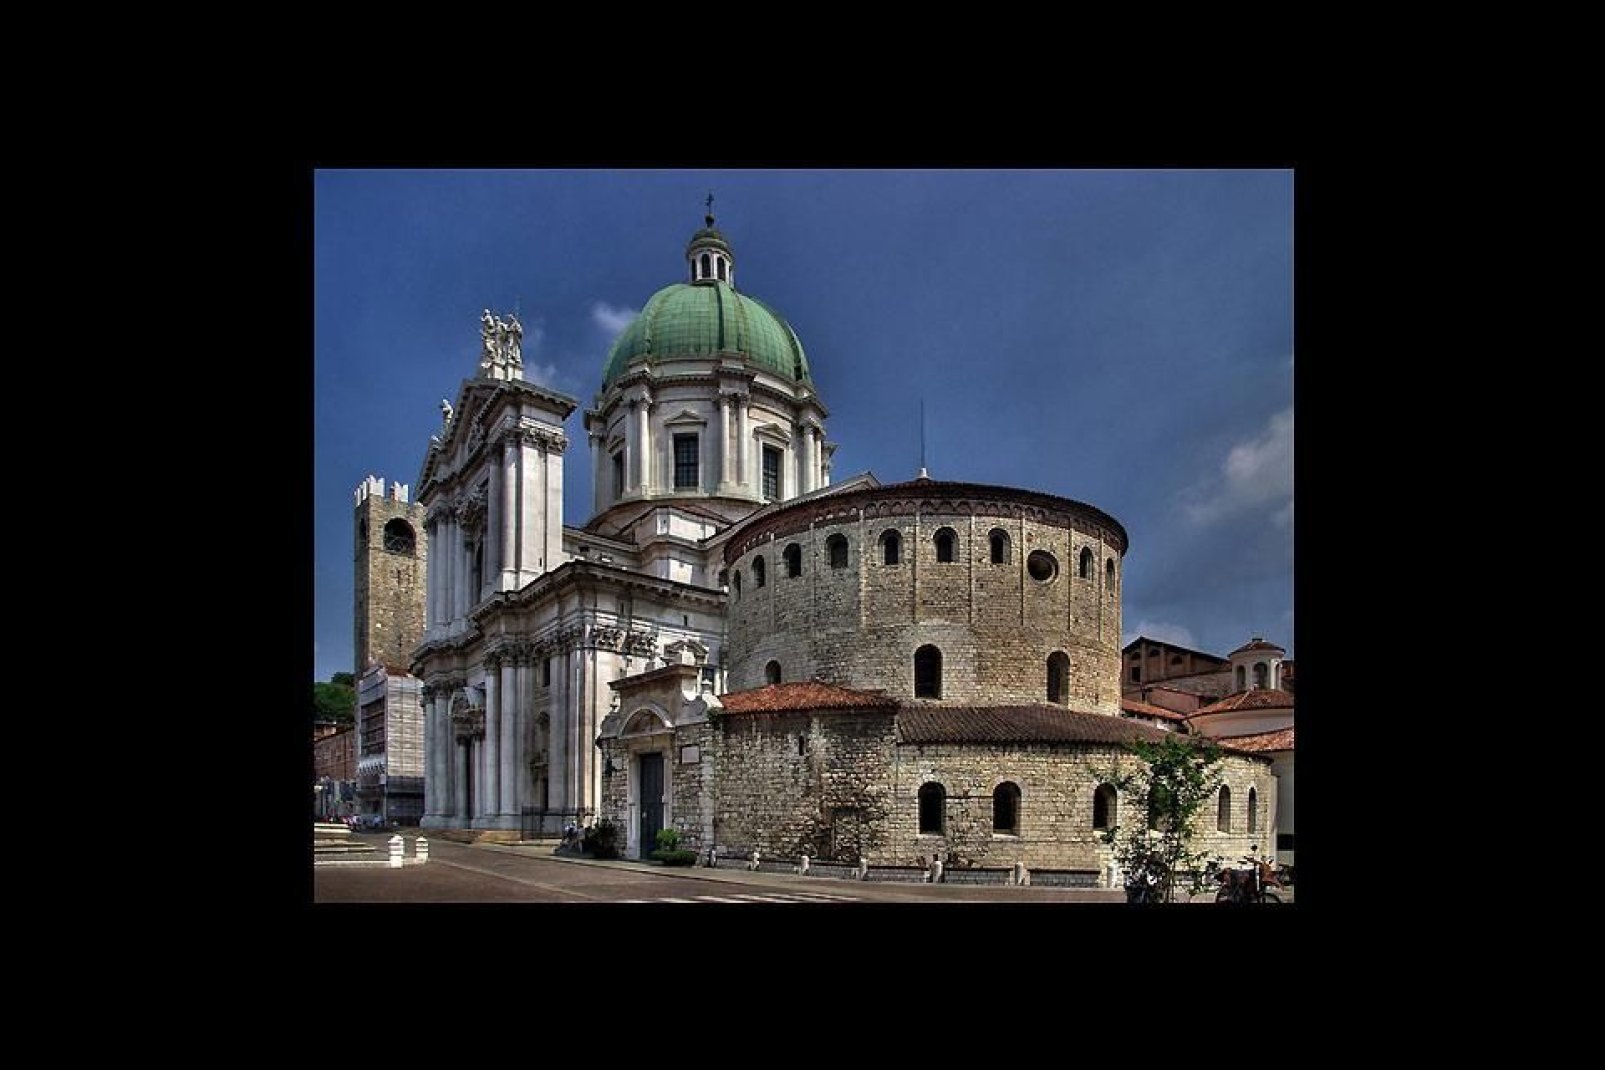 L'Ancien Dôme est la concathédrale de Brescia. Sa construction a débuté au XIè siècle au-dessus d'une ancienne basilique, dont la structure romane d'origine est restée intacte.